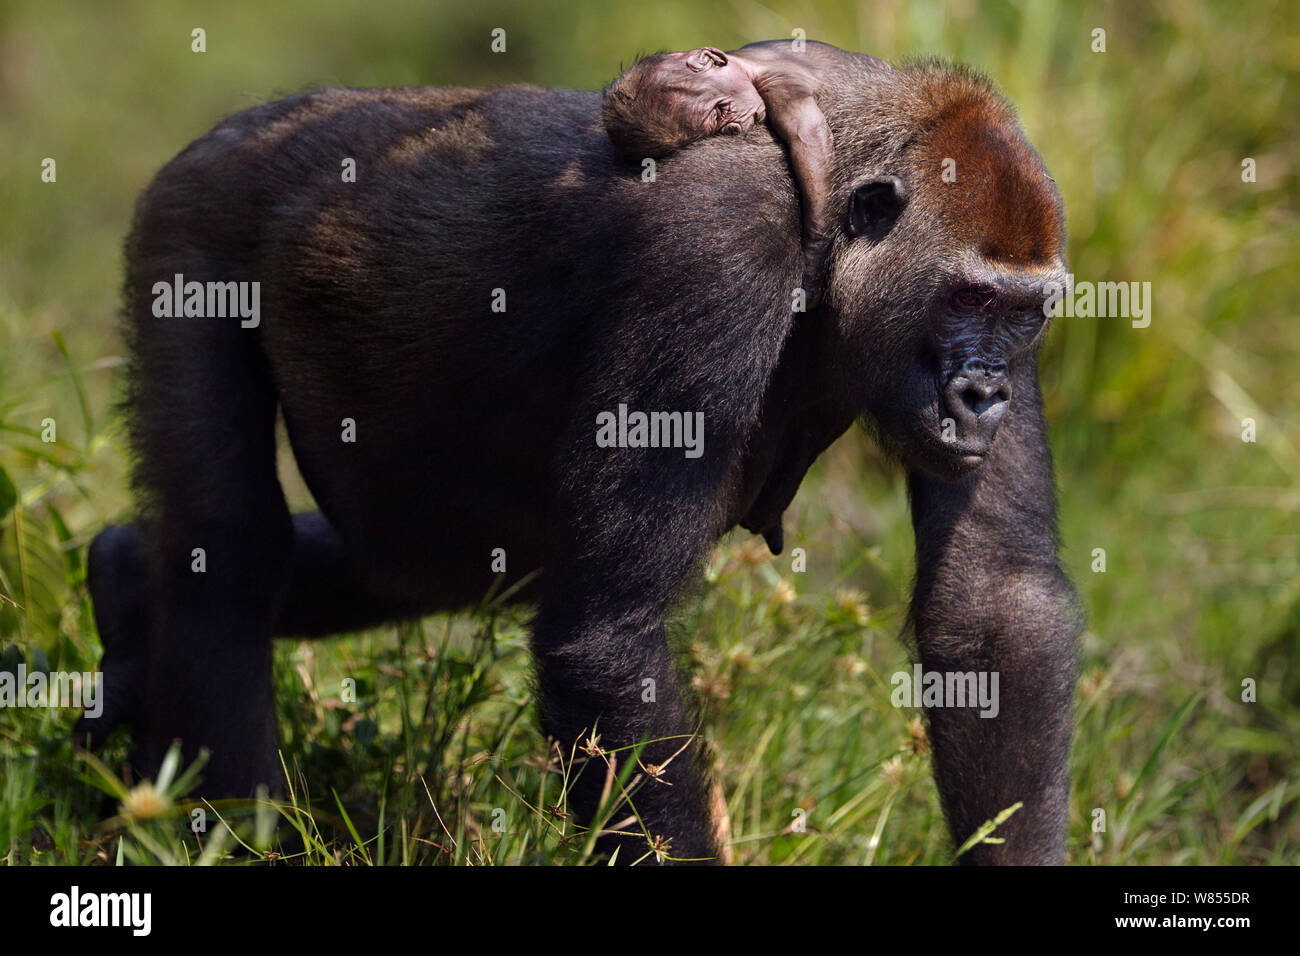 Gorila de las tierras bajas occidentales (Gorilla gorilla gorilla) hembra 'Malui' que llevaba a su bebé muerto sobre su espalda, Bai, Hokou Dzanga Sangha Especial Reserva de Bosque Denso, República Centroafricana. De diciembre de 2011. Foto de stock